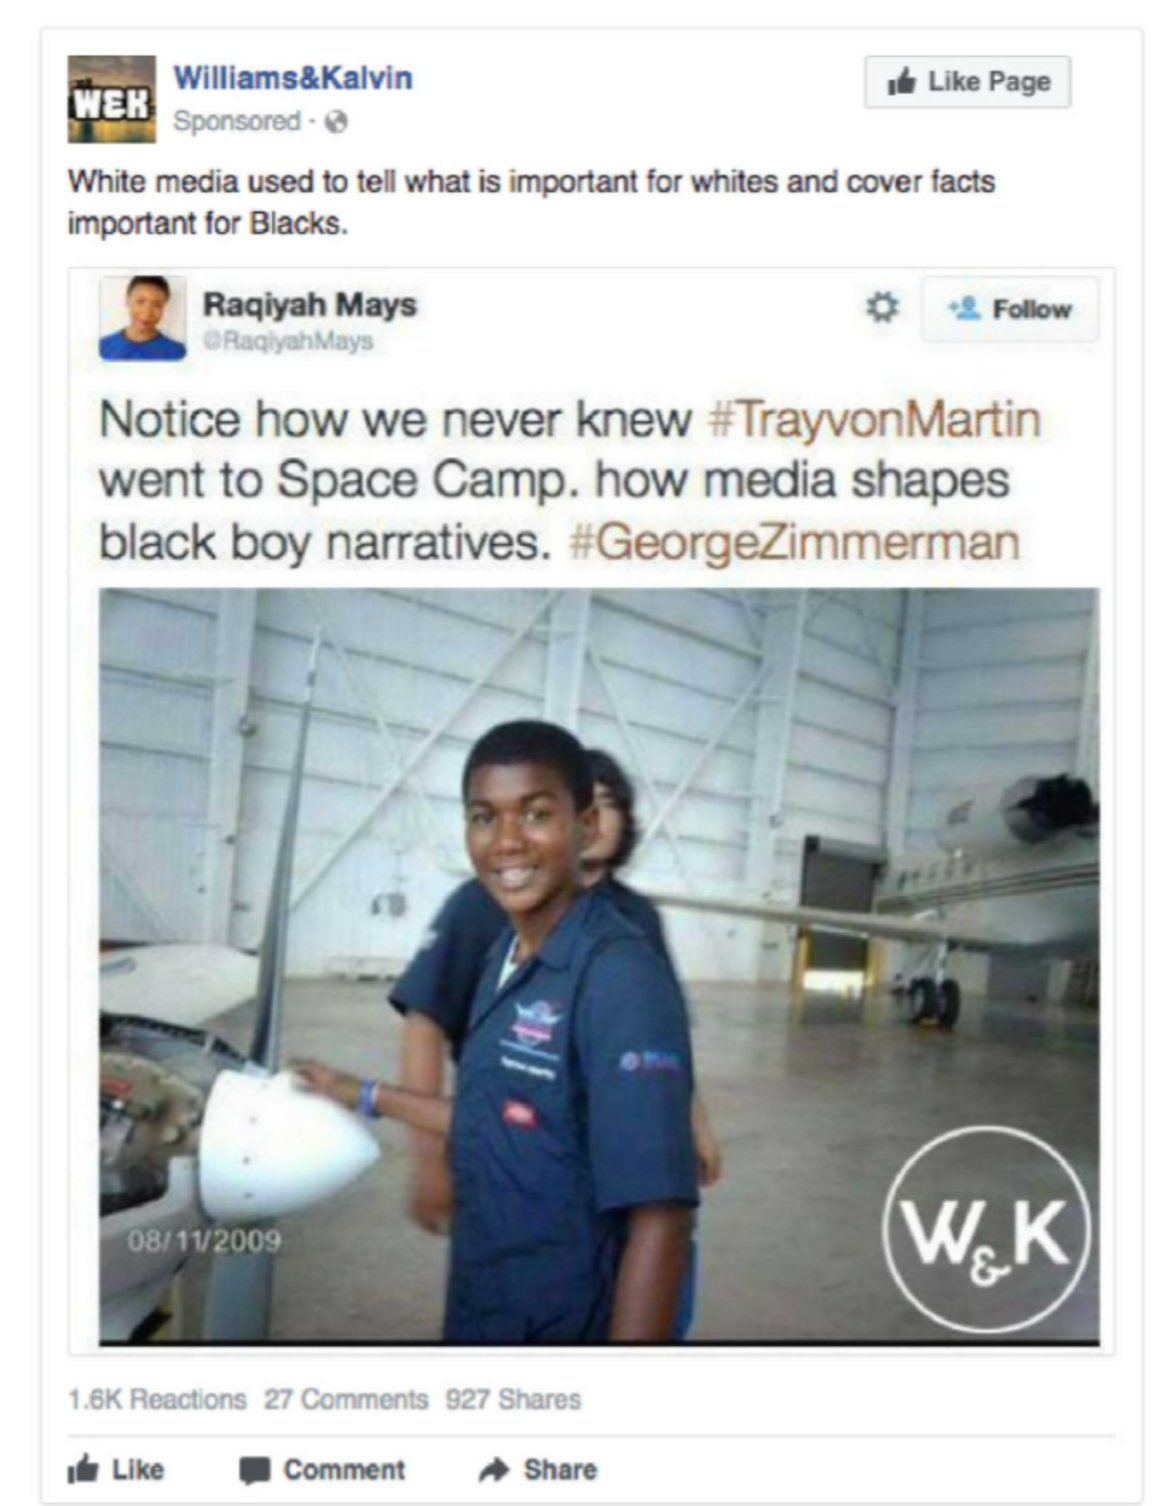 Спонсориран пост на групата Williams and Kalvin, в който се казва: "Белите медии ни съобщаваха само това, което е важно за белите, и скриваха фактите, които са важни за чернокожите"